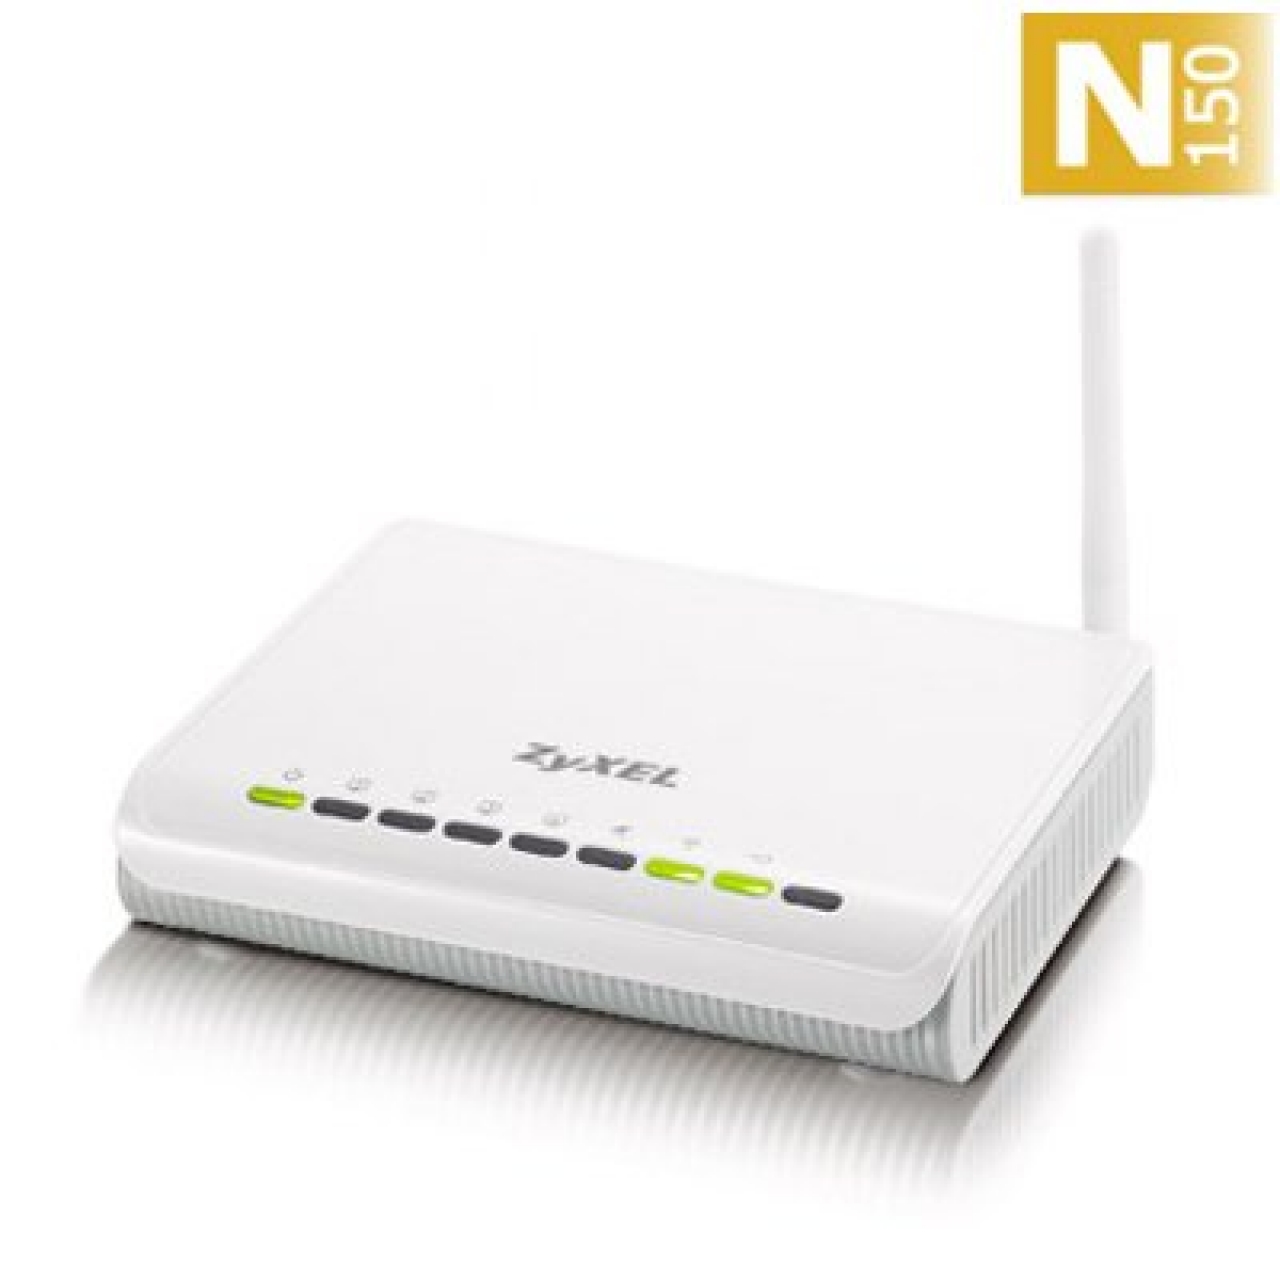 ZYXEL NBG416N Kablosuz,150Mbps,4 Portlu,5dBi Antenli AP-Router-Universal Repeater